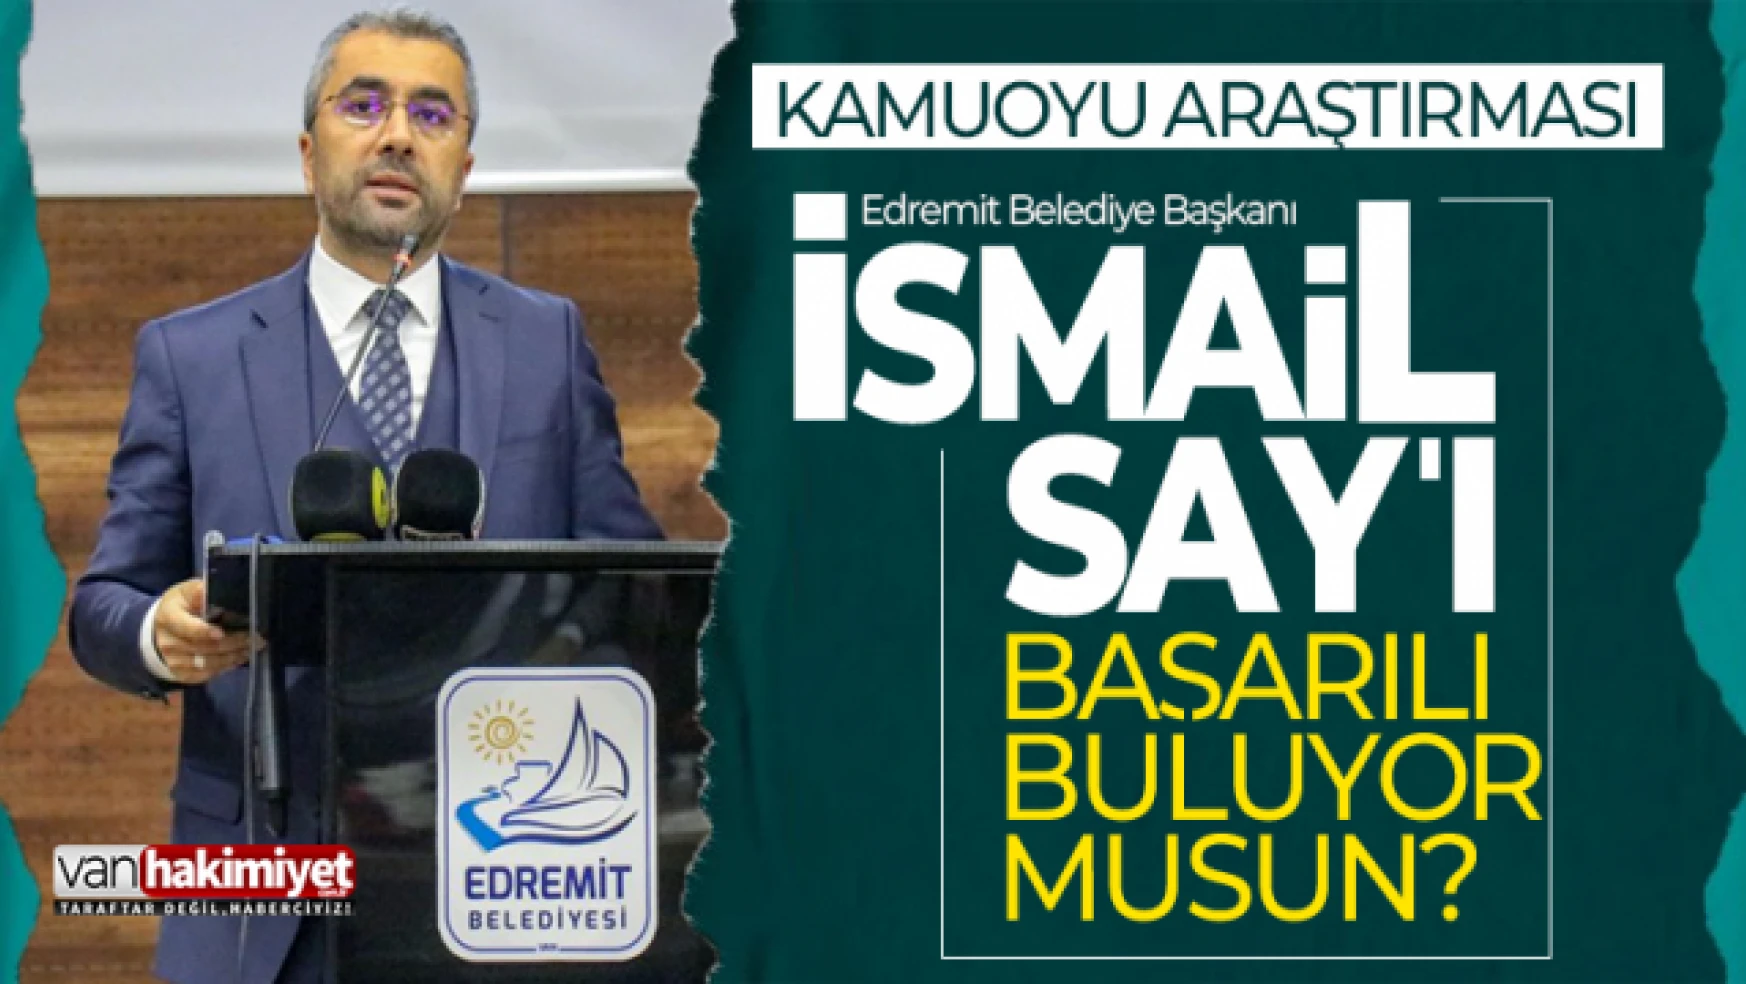 Edremit Belediye Başkanı İsmail Say'ın çalışmalarını başarılı buluyor musunuz?